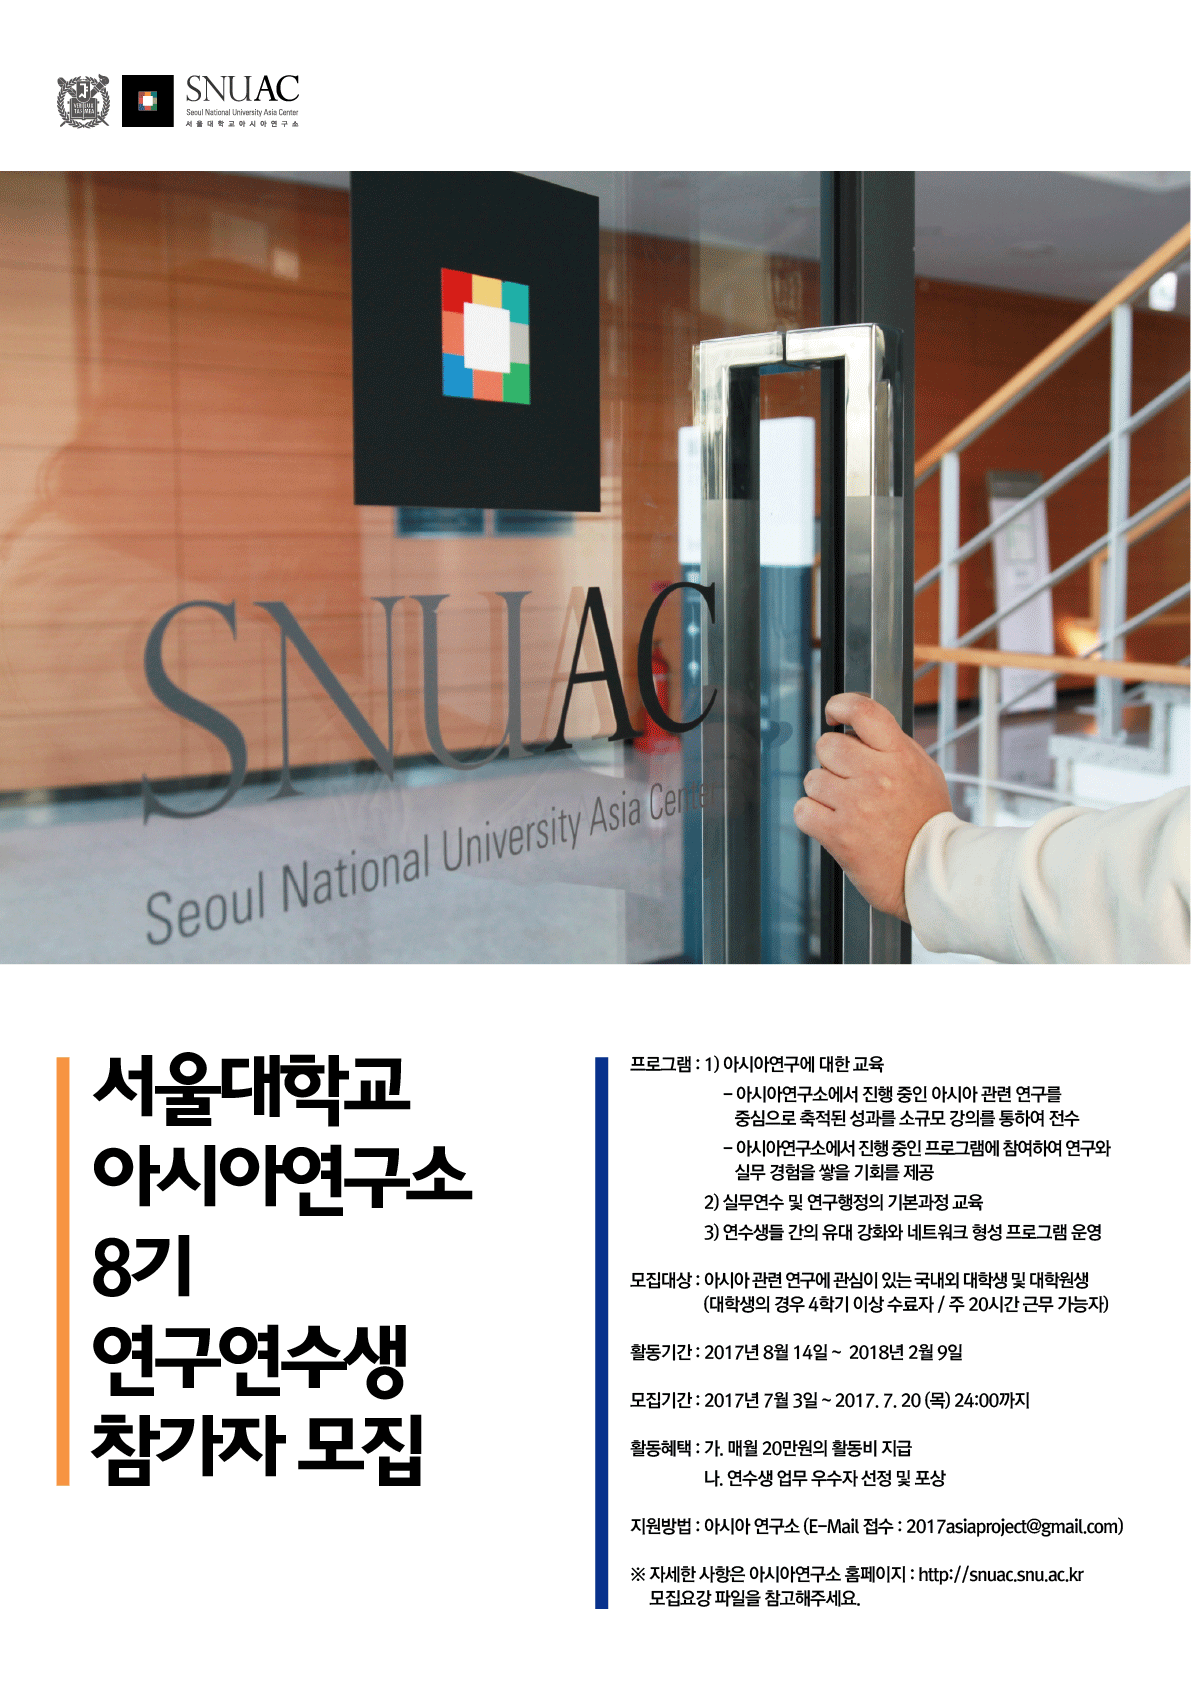 [공고] 서울대학교 아시아연구소 8기 연구연수생 과정 참가자 모집